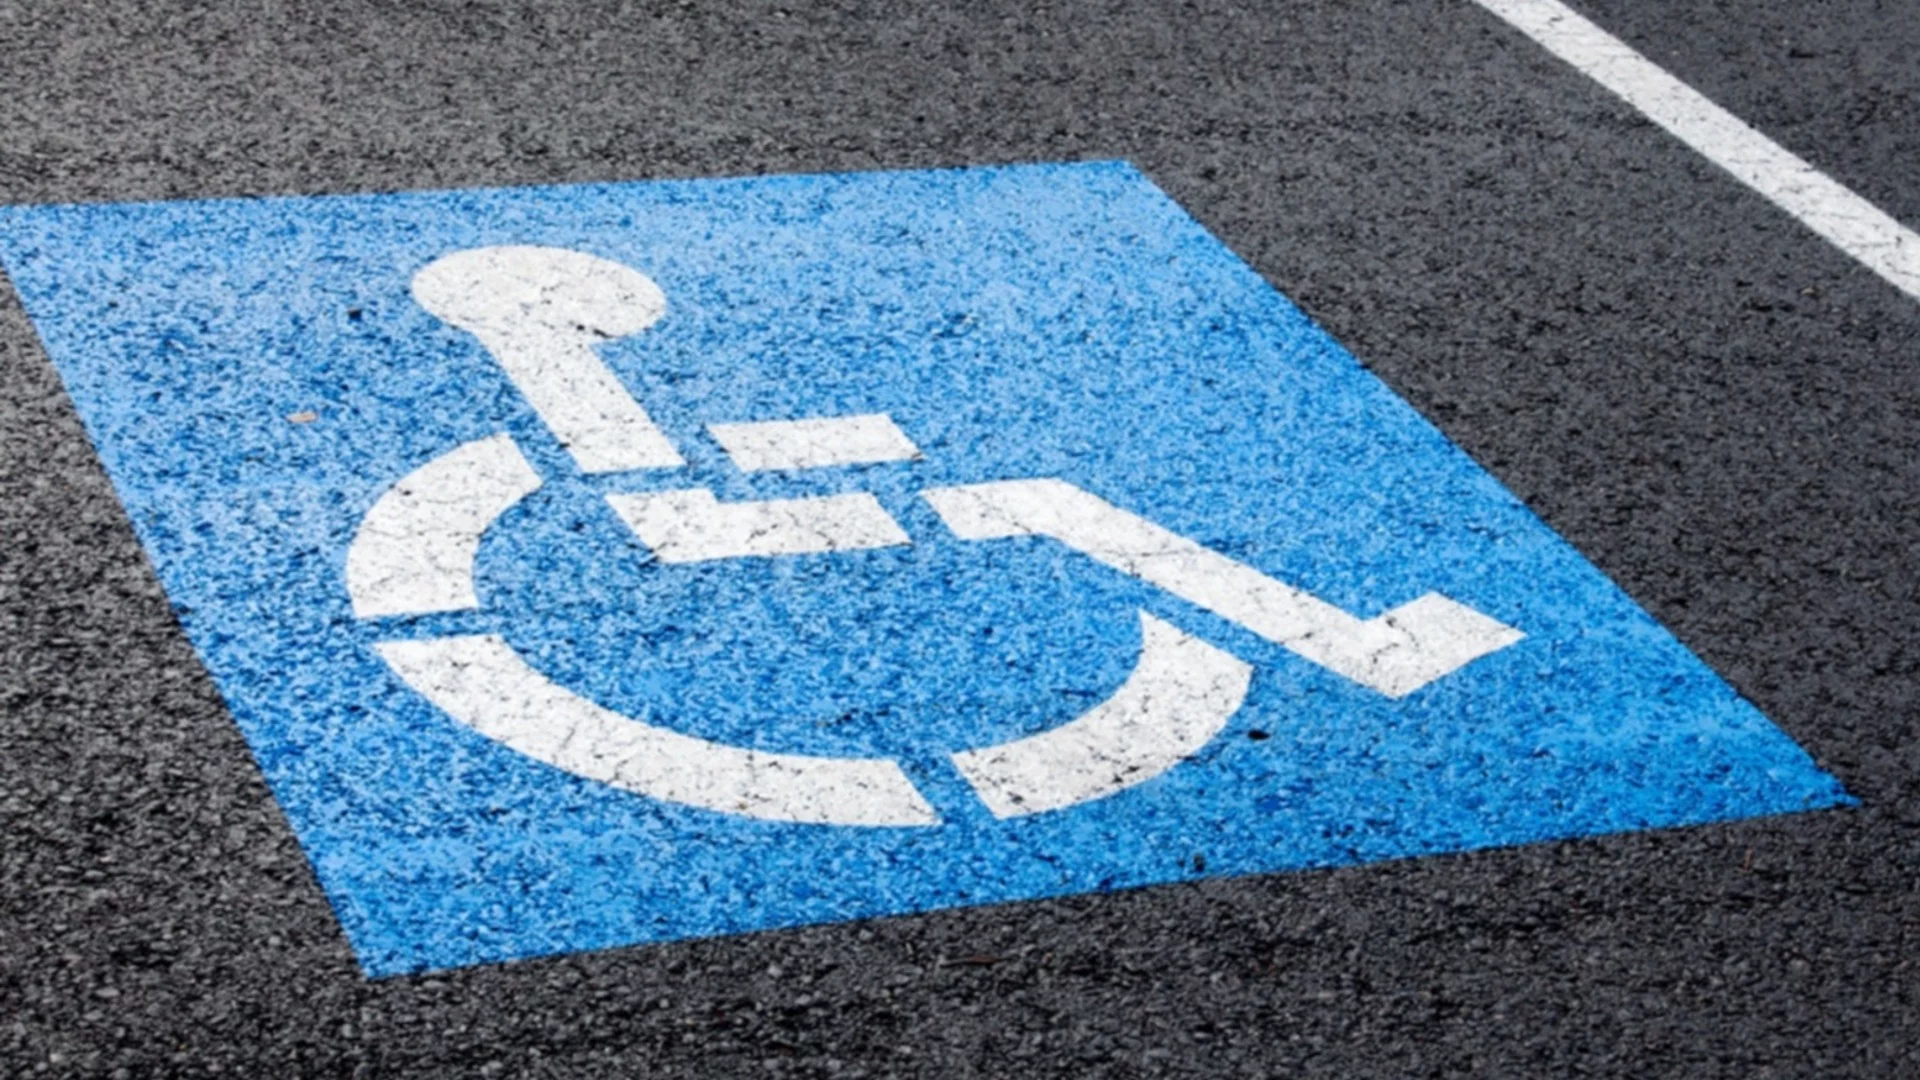 Хората с увреждания останаха без паркоместа след промените в движението в центъра на София